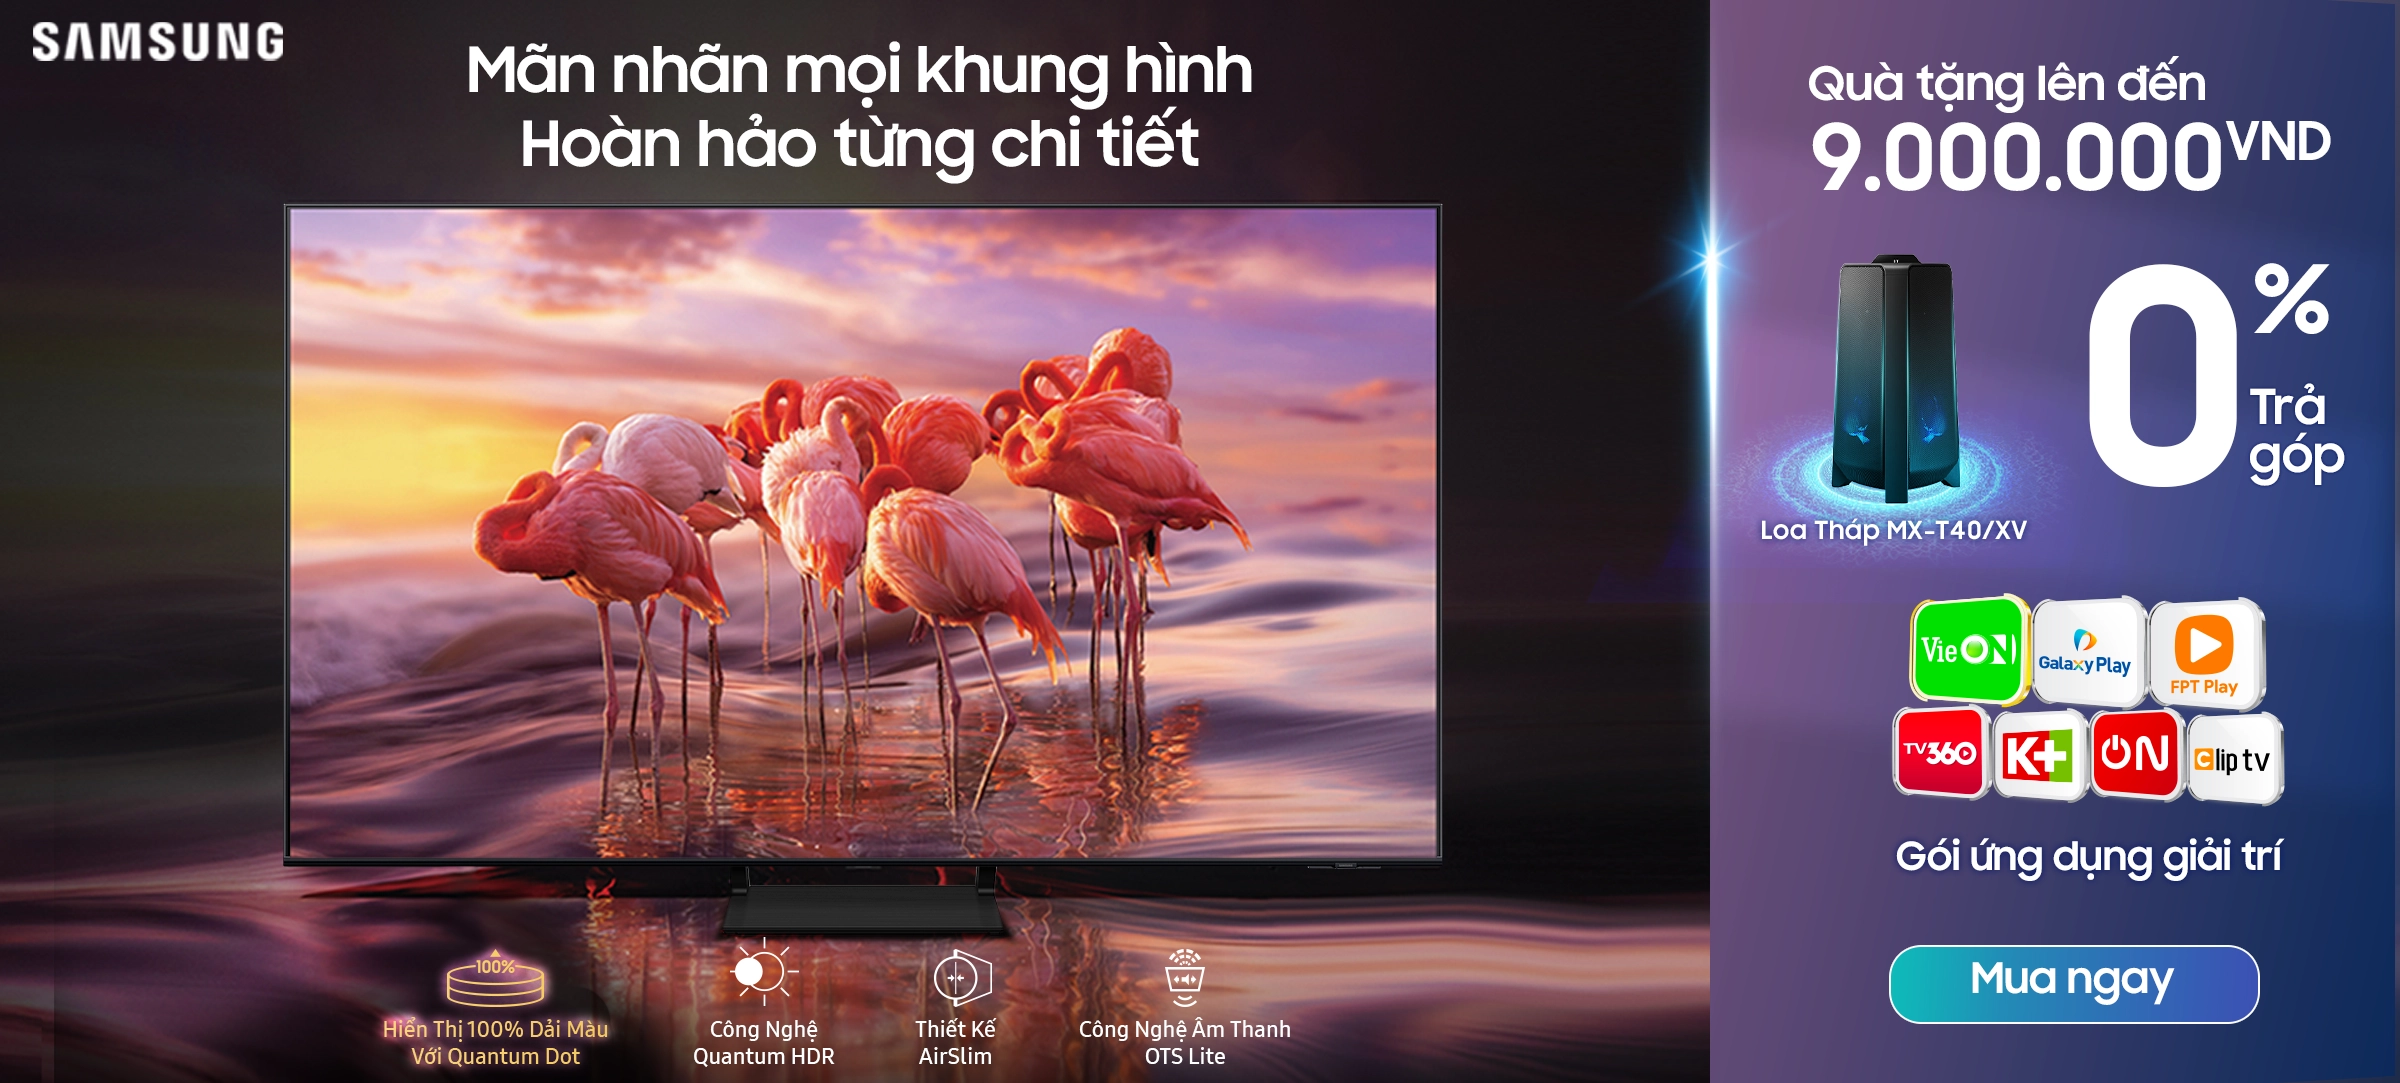 Samsung QLED Tivi quà chất hình ảnh đỉnh cao